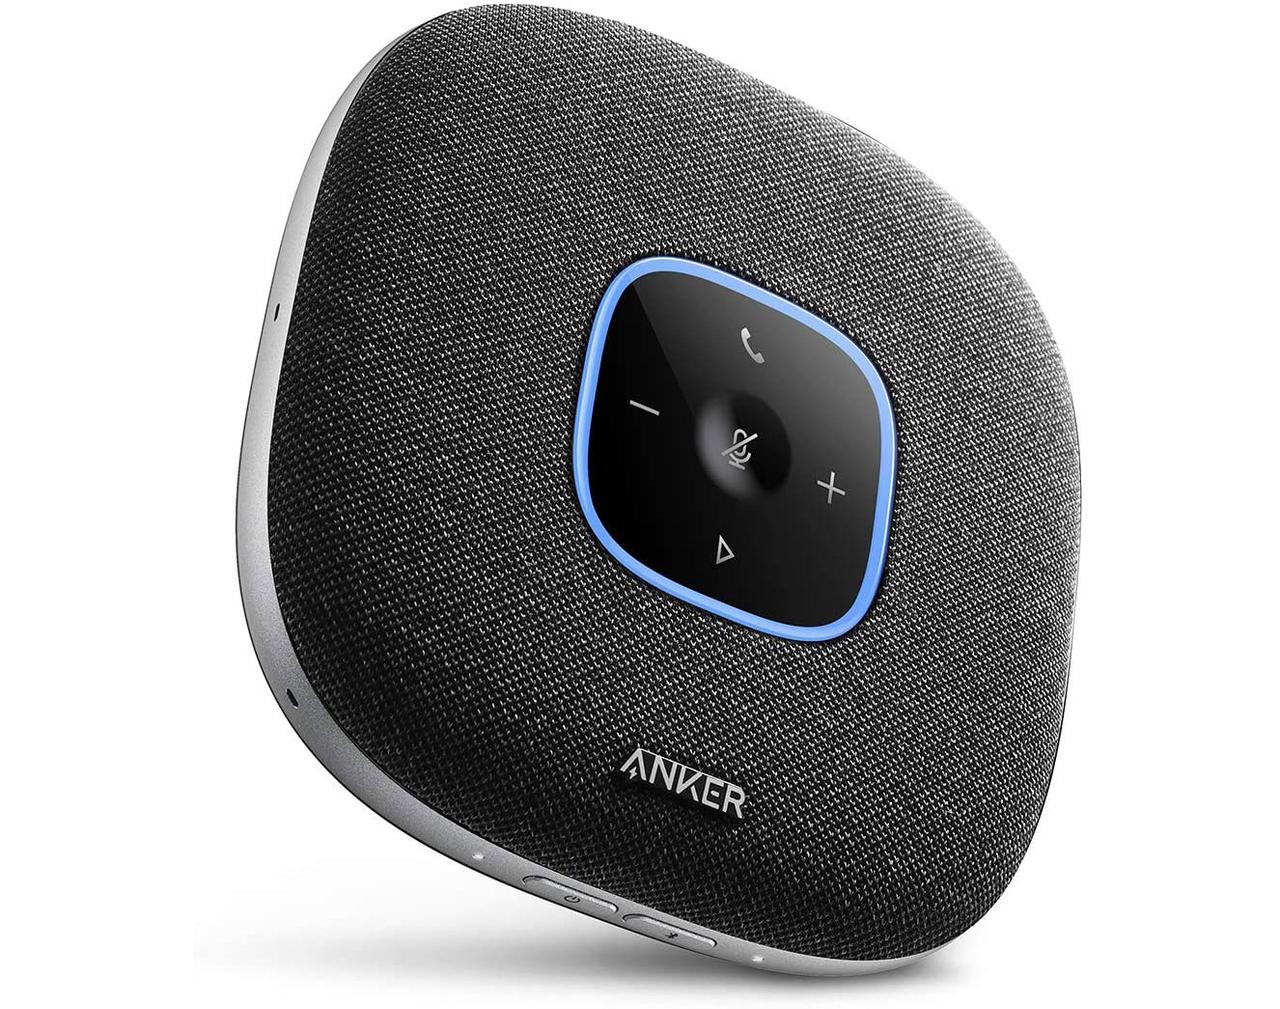 【Amazonタイムセール中！】Ankerの全指向性マイク搭載スピーカーフォンが39%オフ、素焼きミックスナッツ3種類1kgが34％オフなど